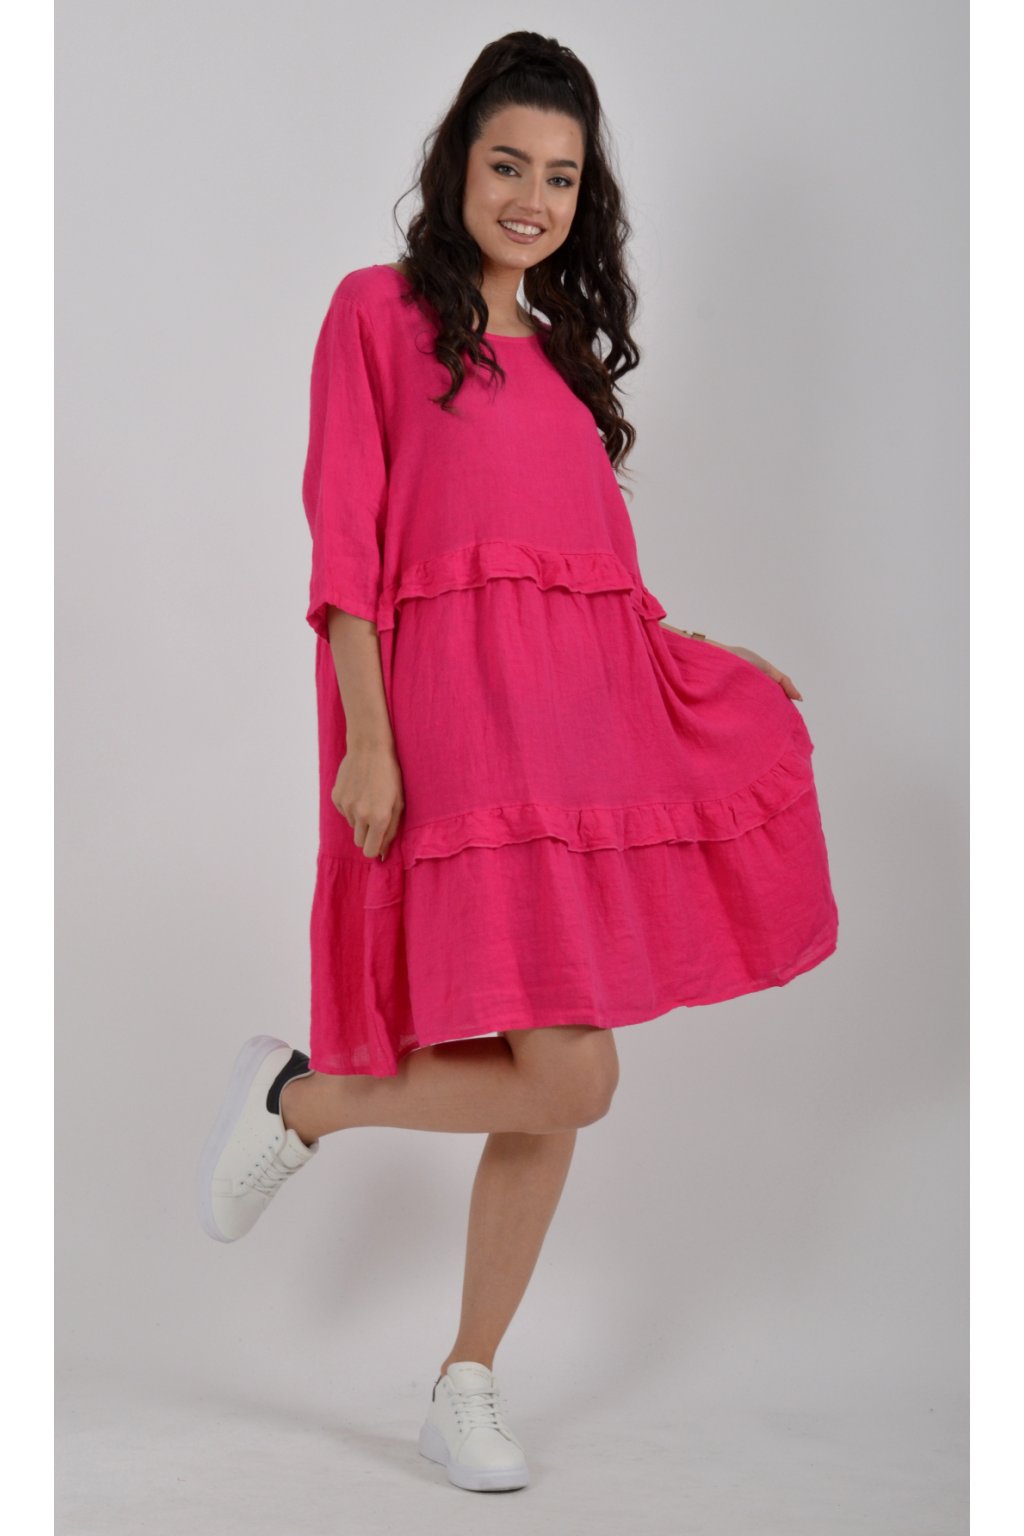 Lněné růžové šaty ES670